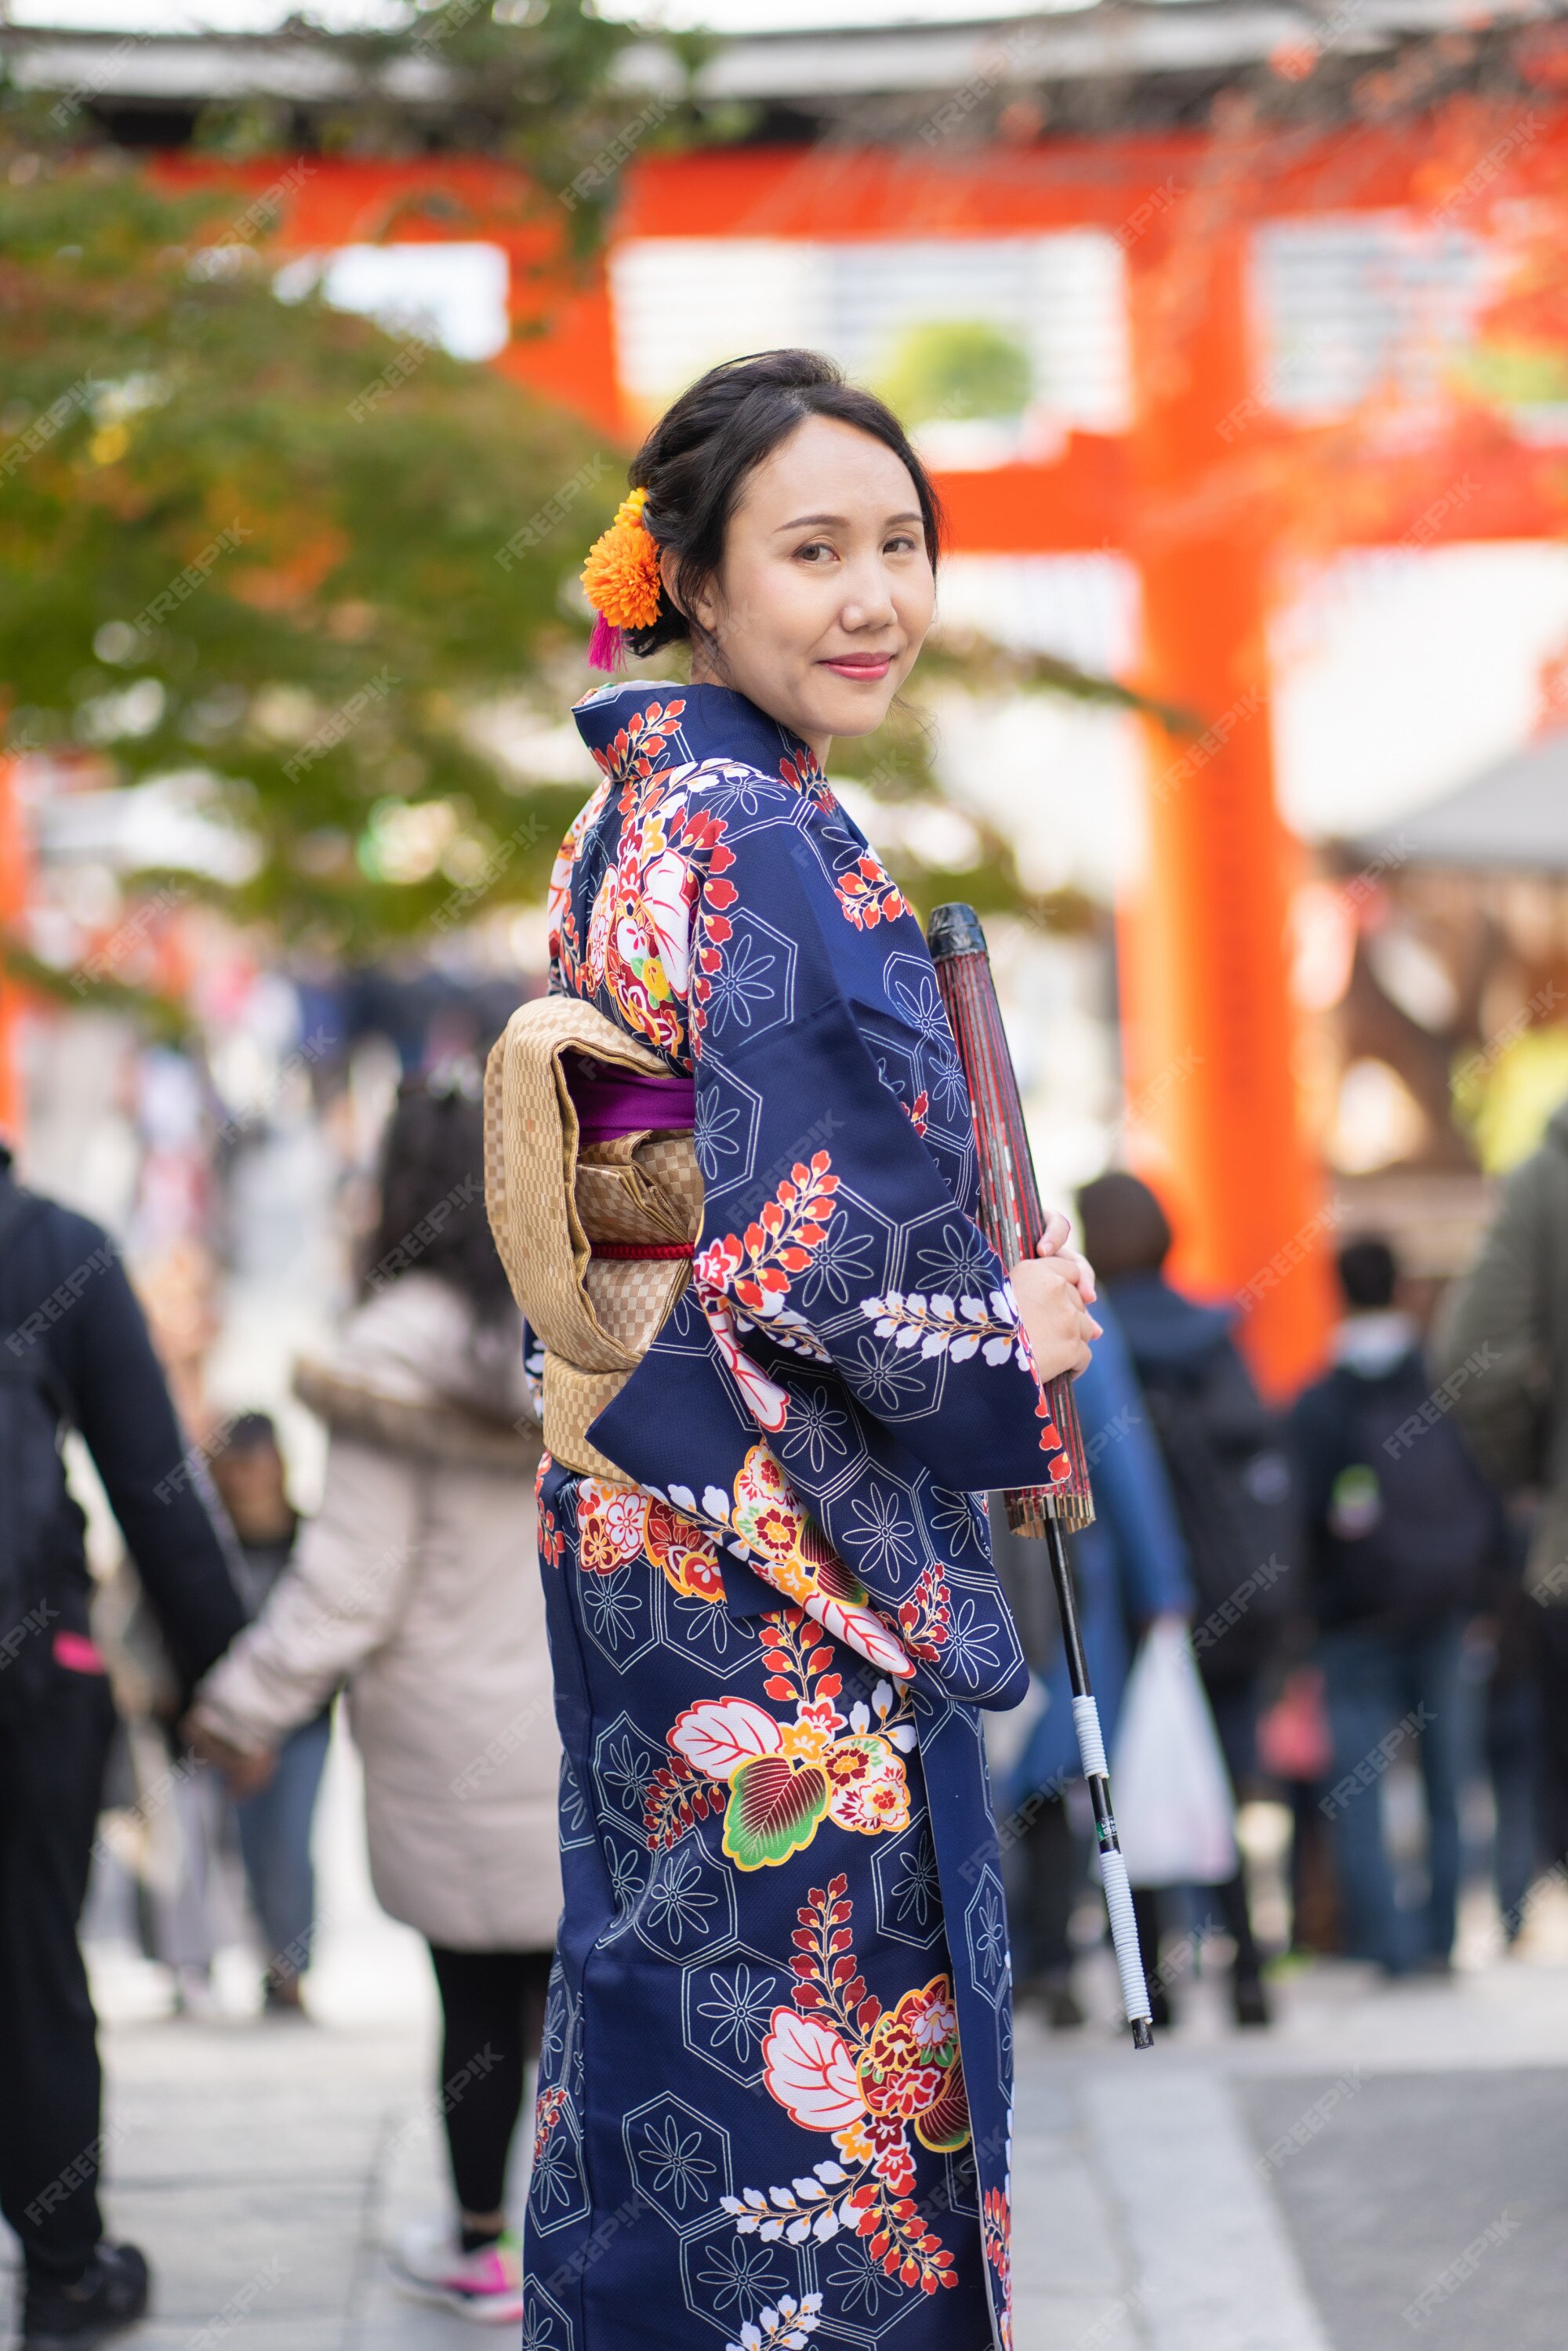 Será informal exposición Geisha con kimono japonés en las calles de kioto | Foto Premium